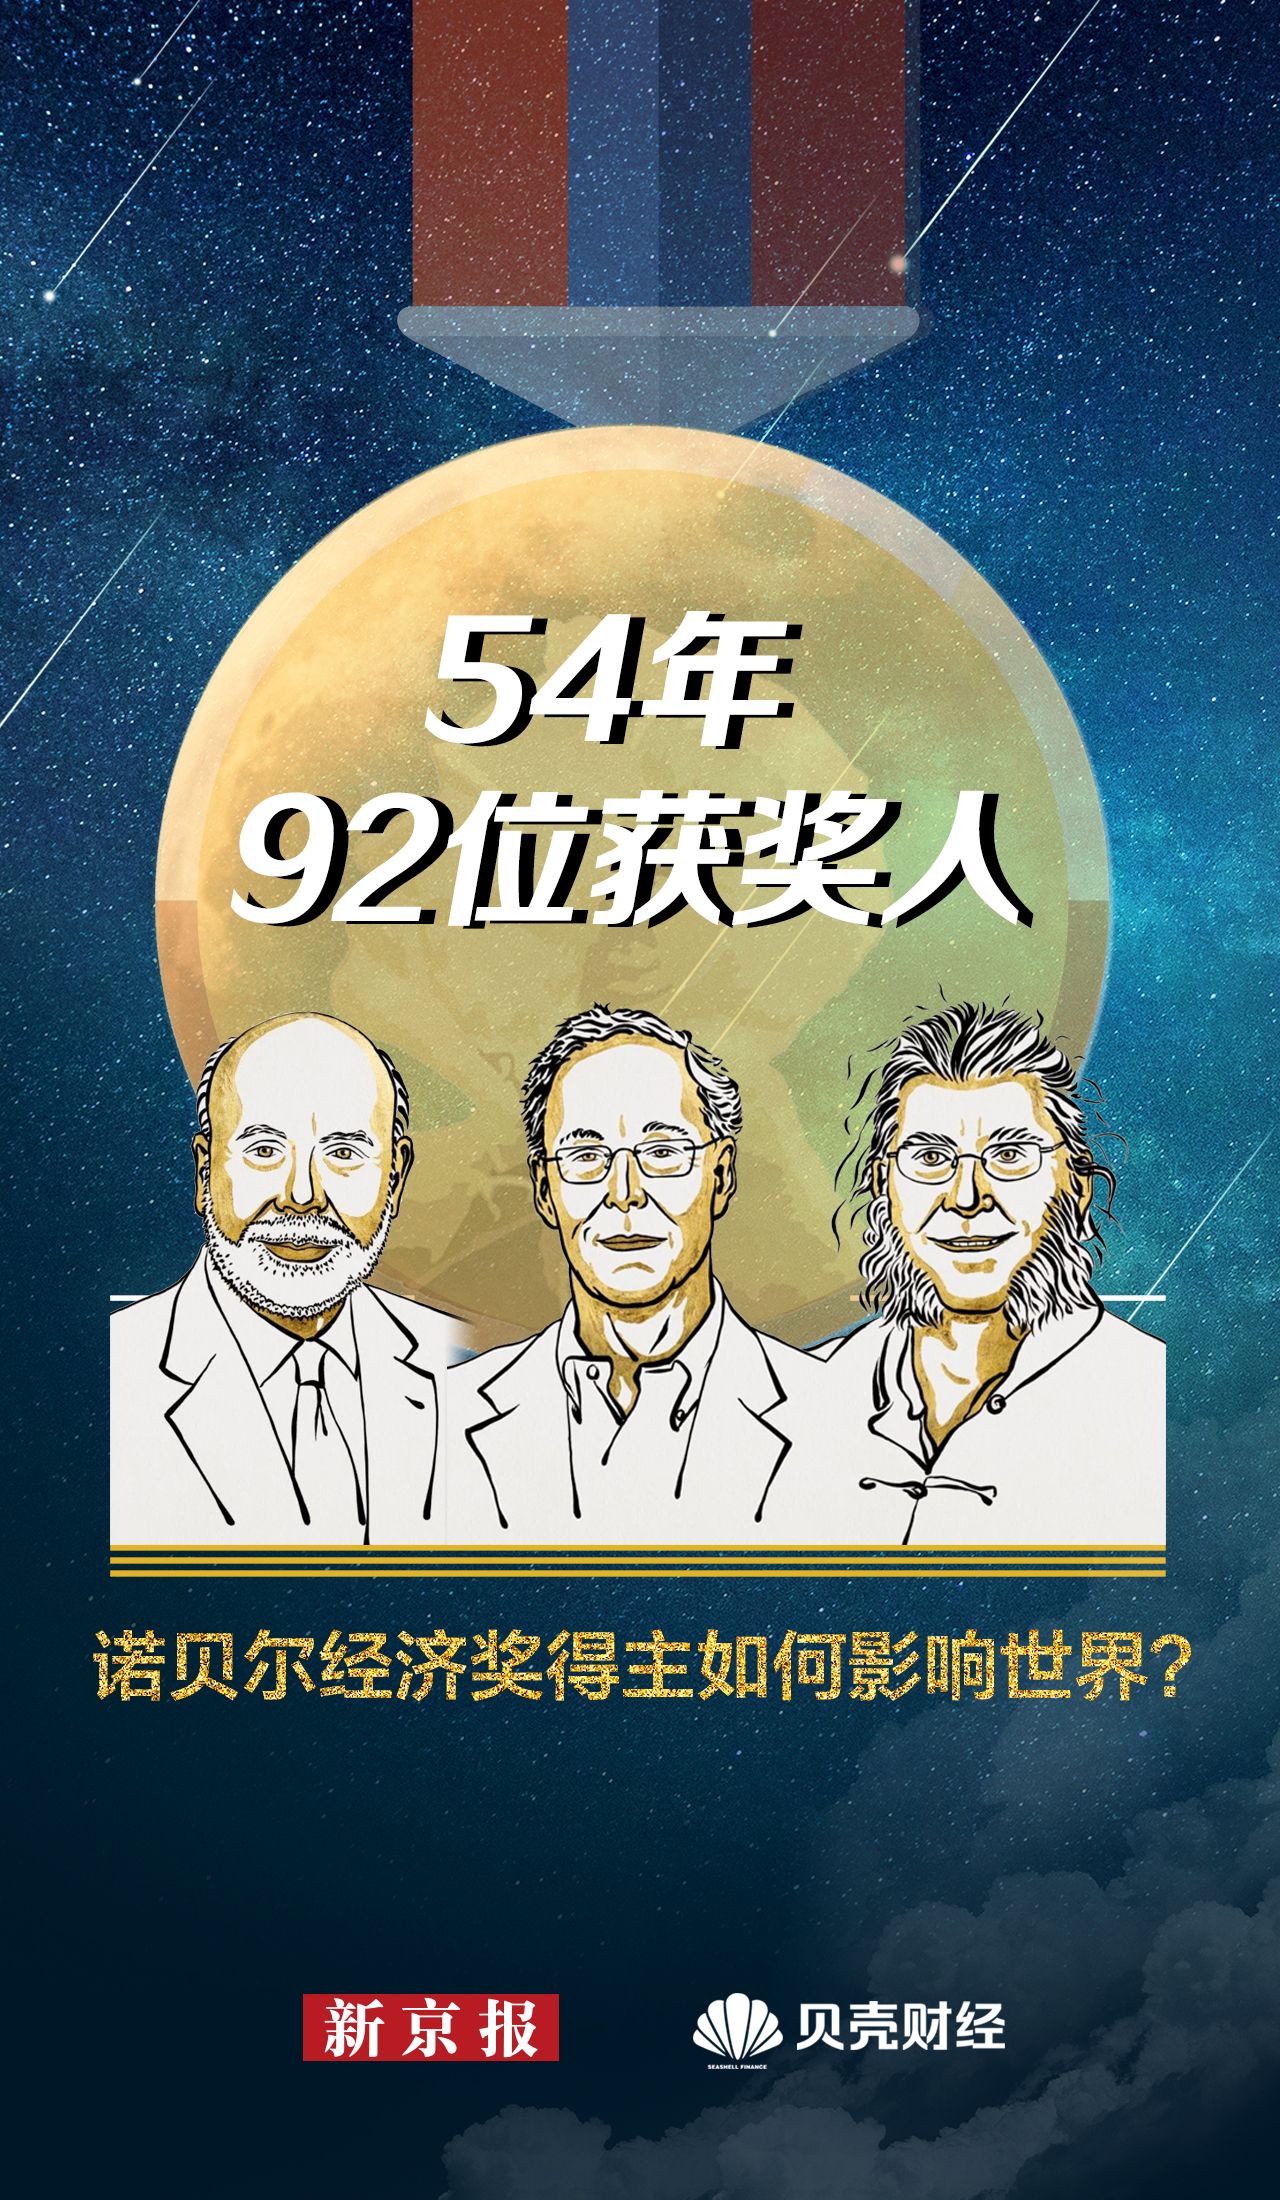 54年诞生92位获奖人 诺贝尔经济学奖如何影响世界？